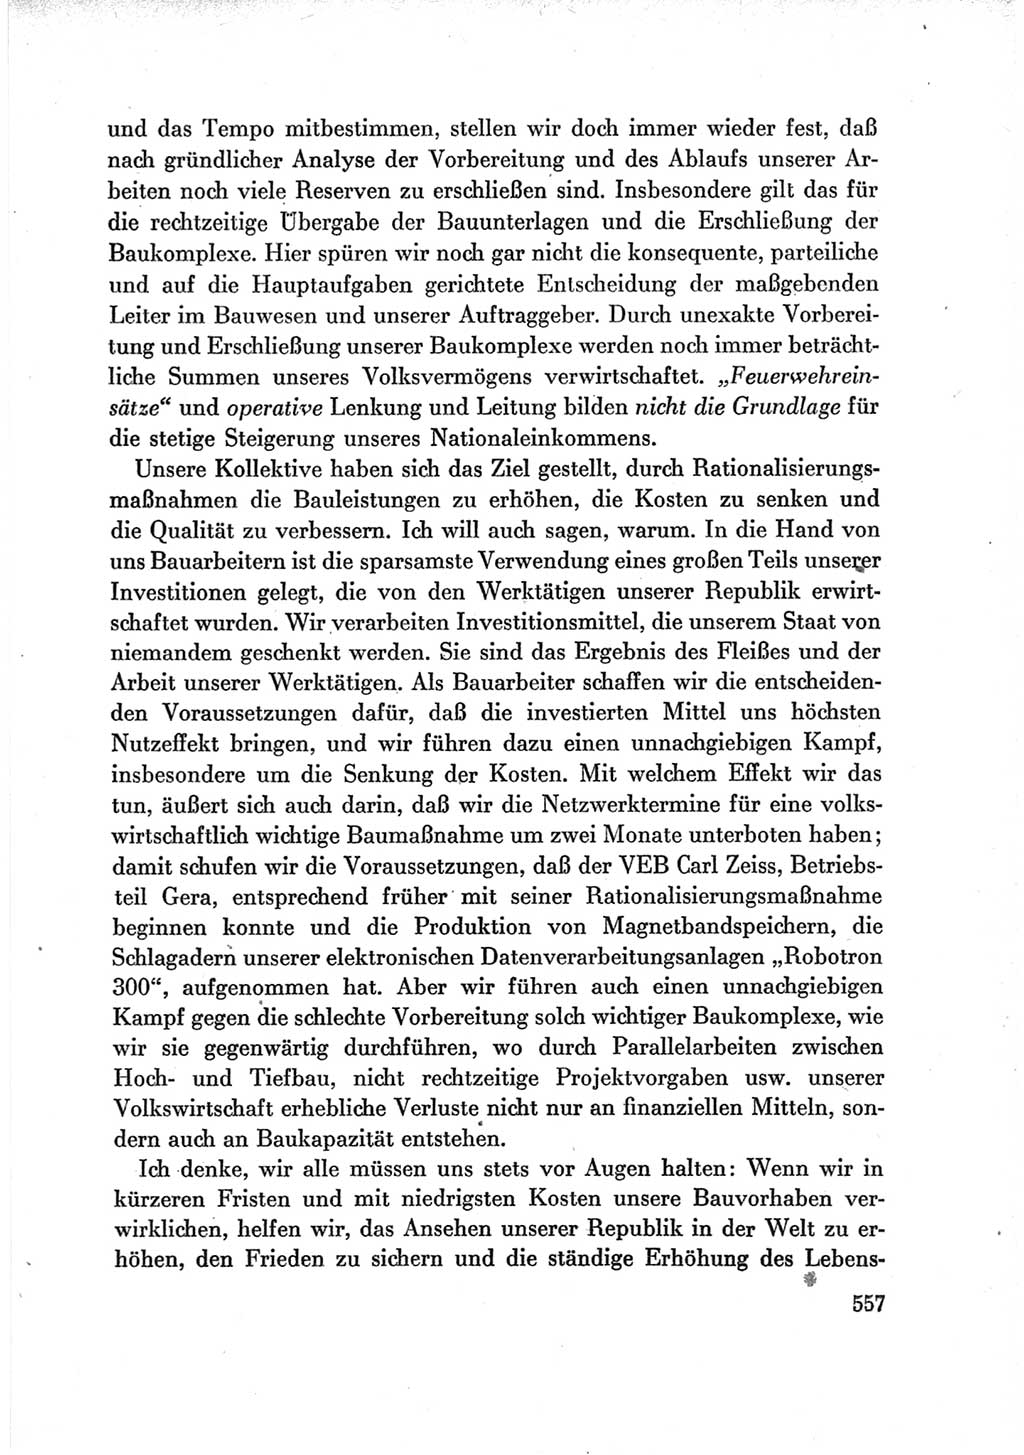 Protokoll der Verhandlungen des Ⅶ. Parteitages der Sozialistischen Einheitspartei Deutschlands (SED) [Deutsche Demokratische Republik (DDR)] 1967, Band Ⅲ, Seite 557 (Prot. Verh. Ⅶ. PT SED DDR 1967, Bd. Ⅲ, S. 557)